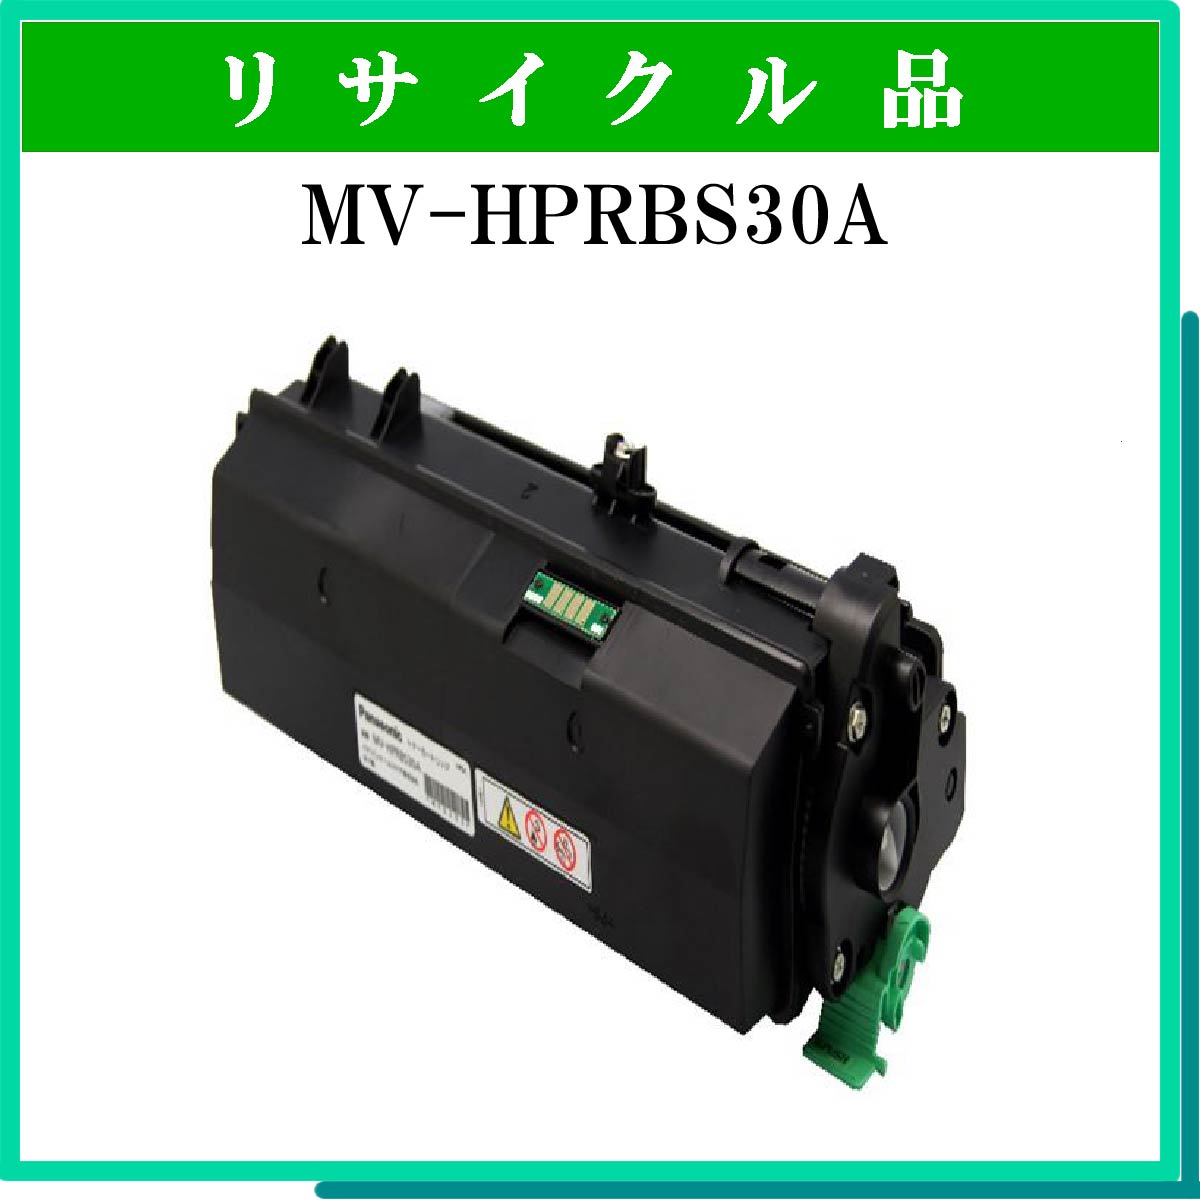 MV-HPRBS30A